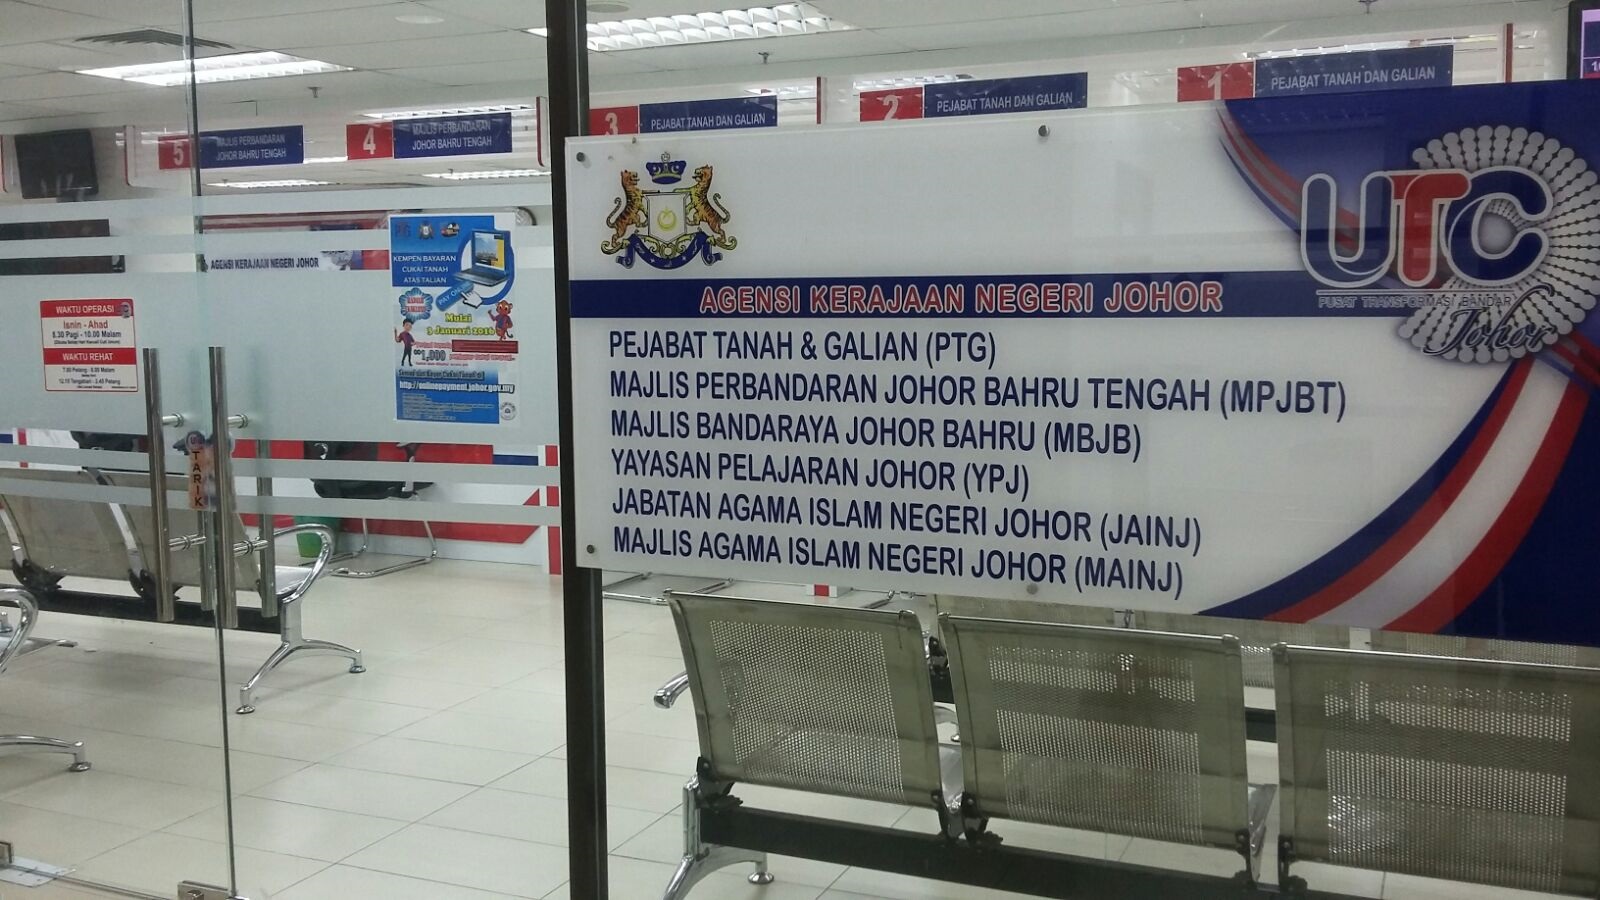 Majlis Agama Islam Negeri Johor (MAIJ)